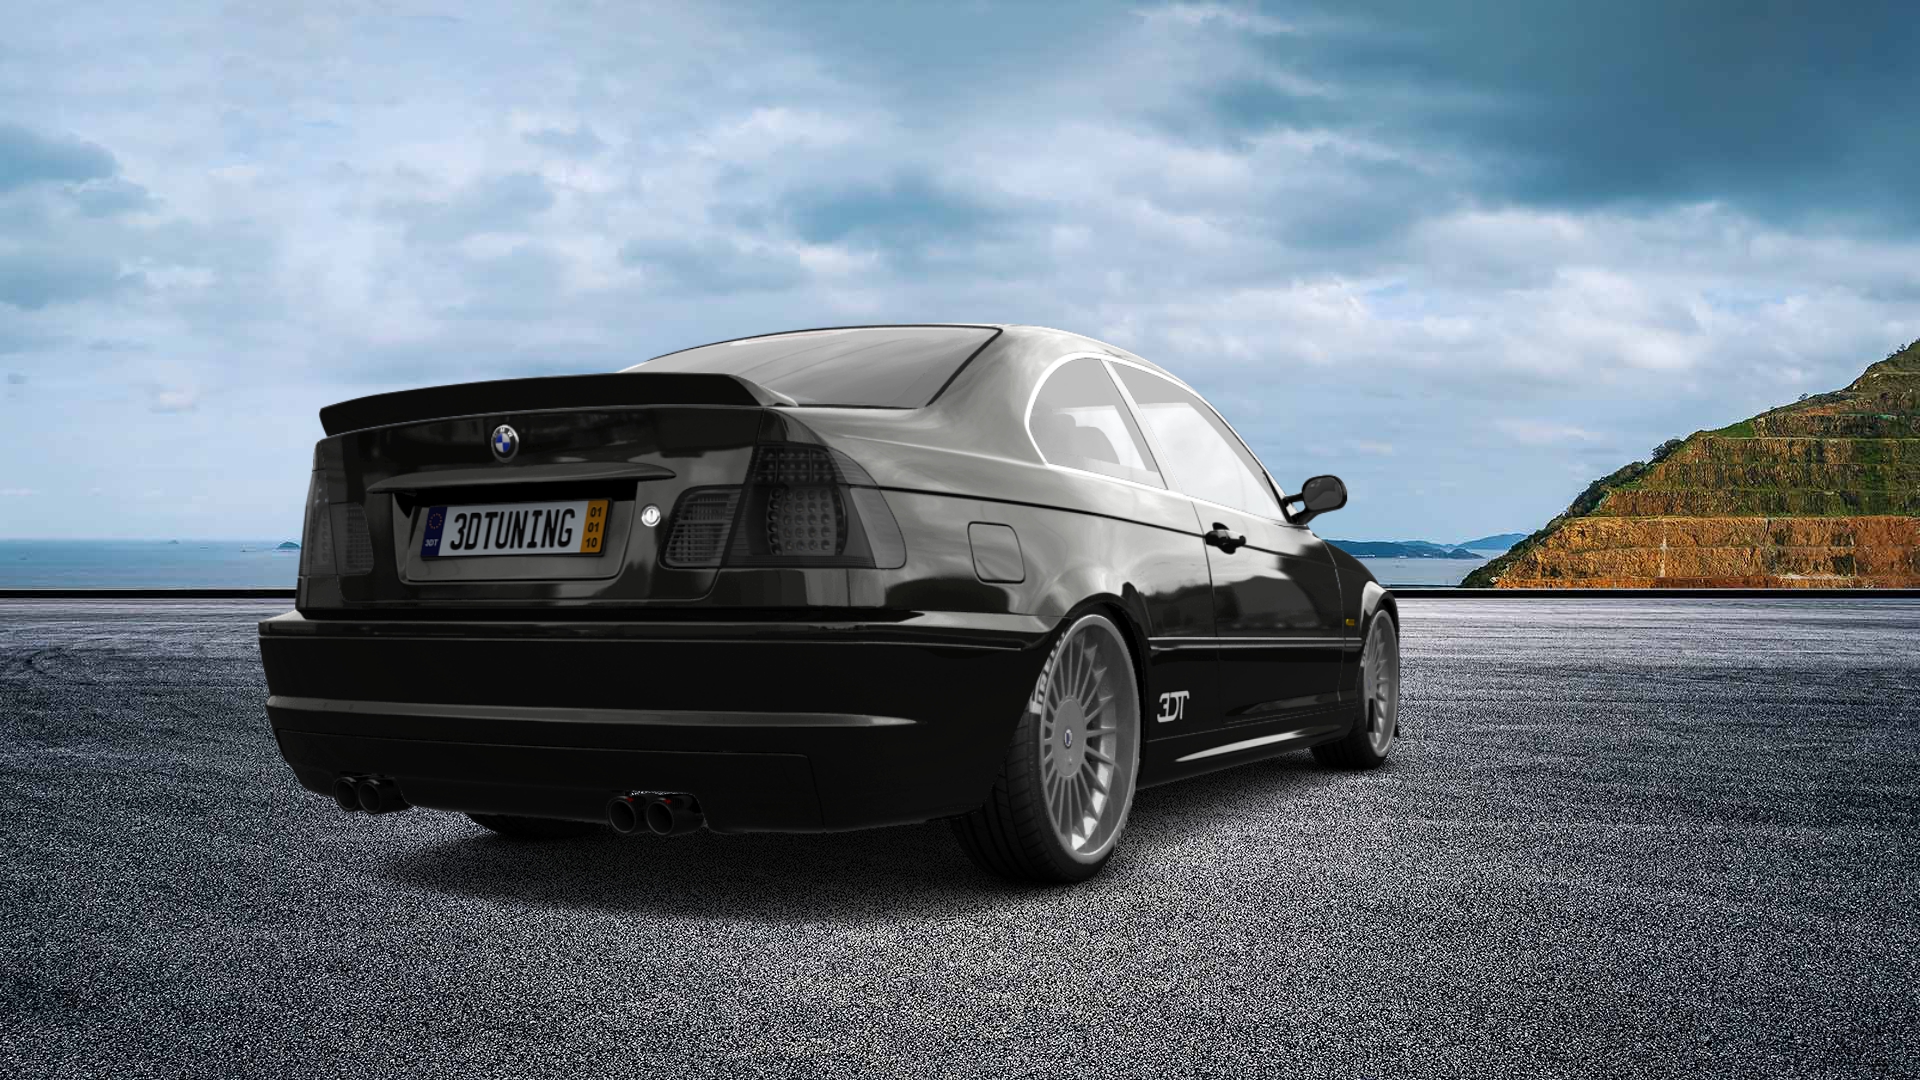 BMW 3 Series 2 Door Coupe 2001 tuning